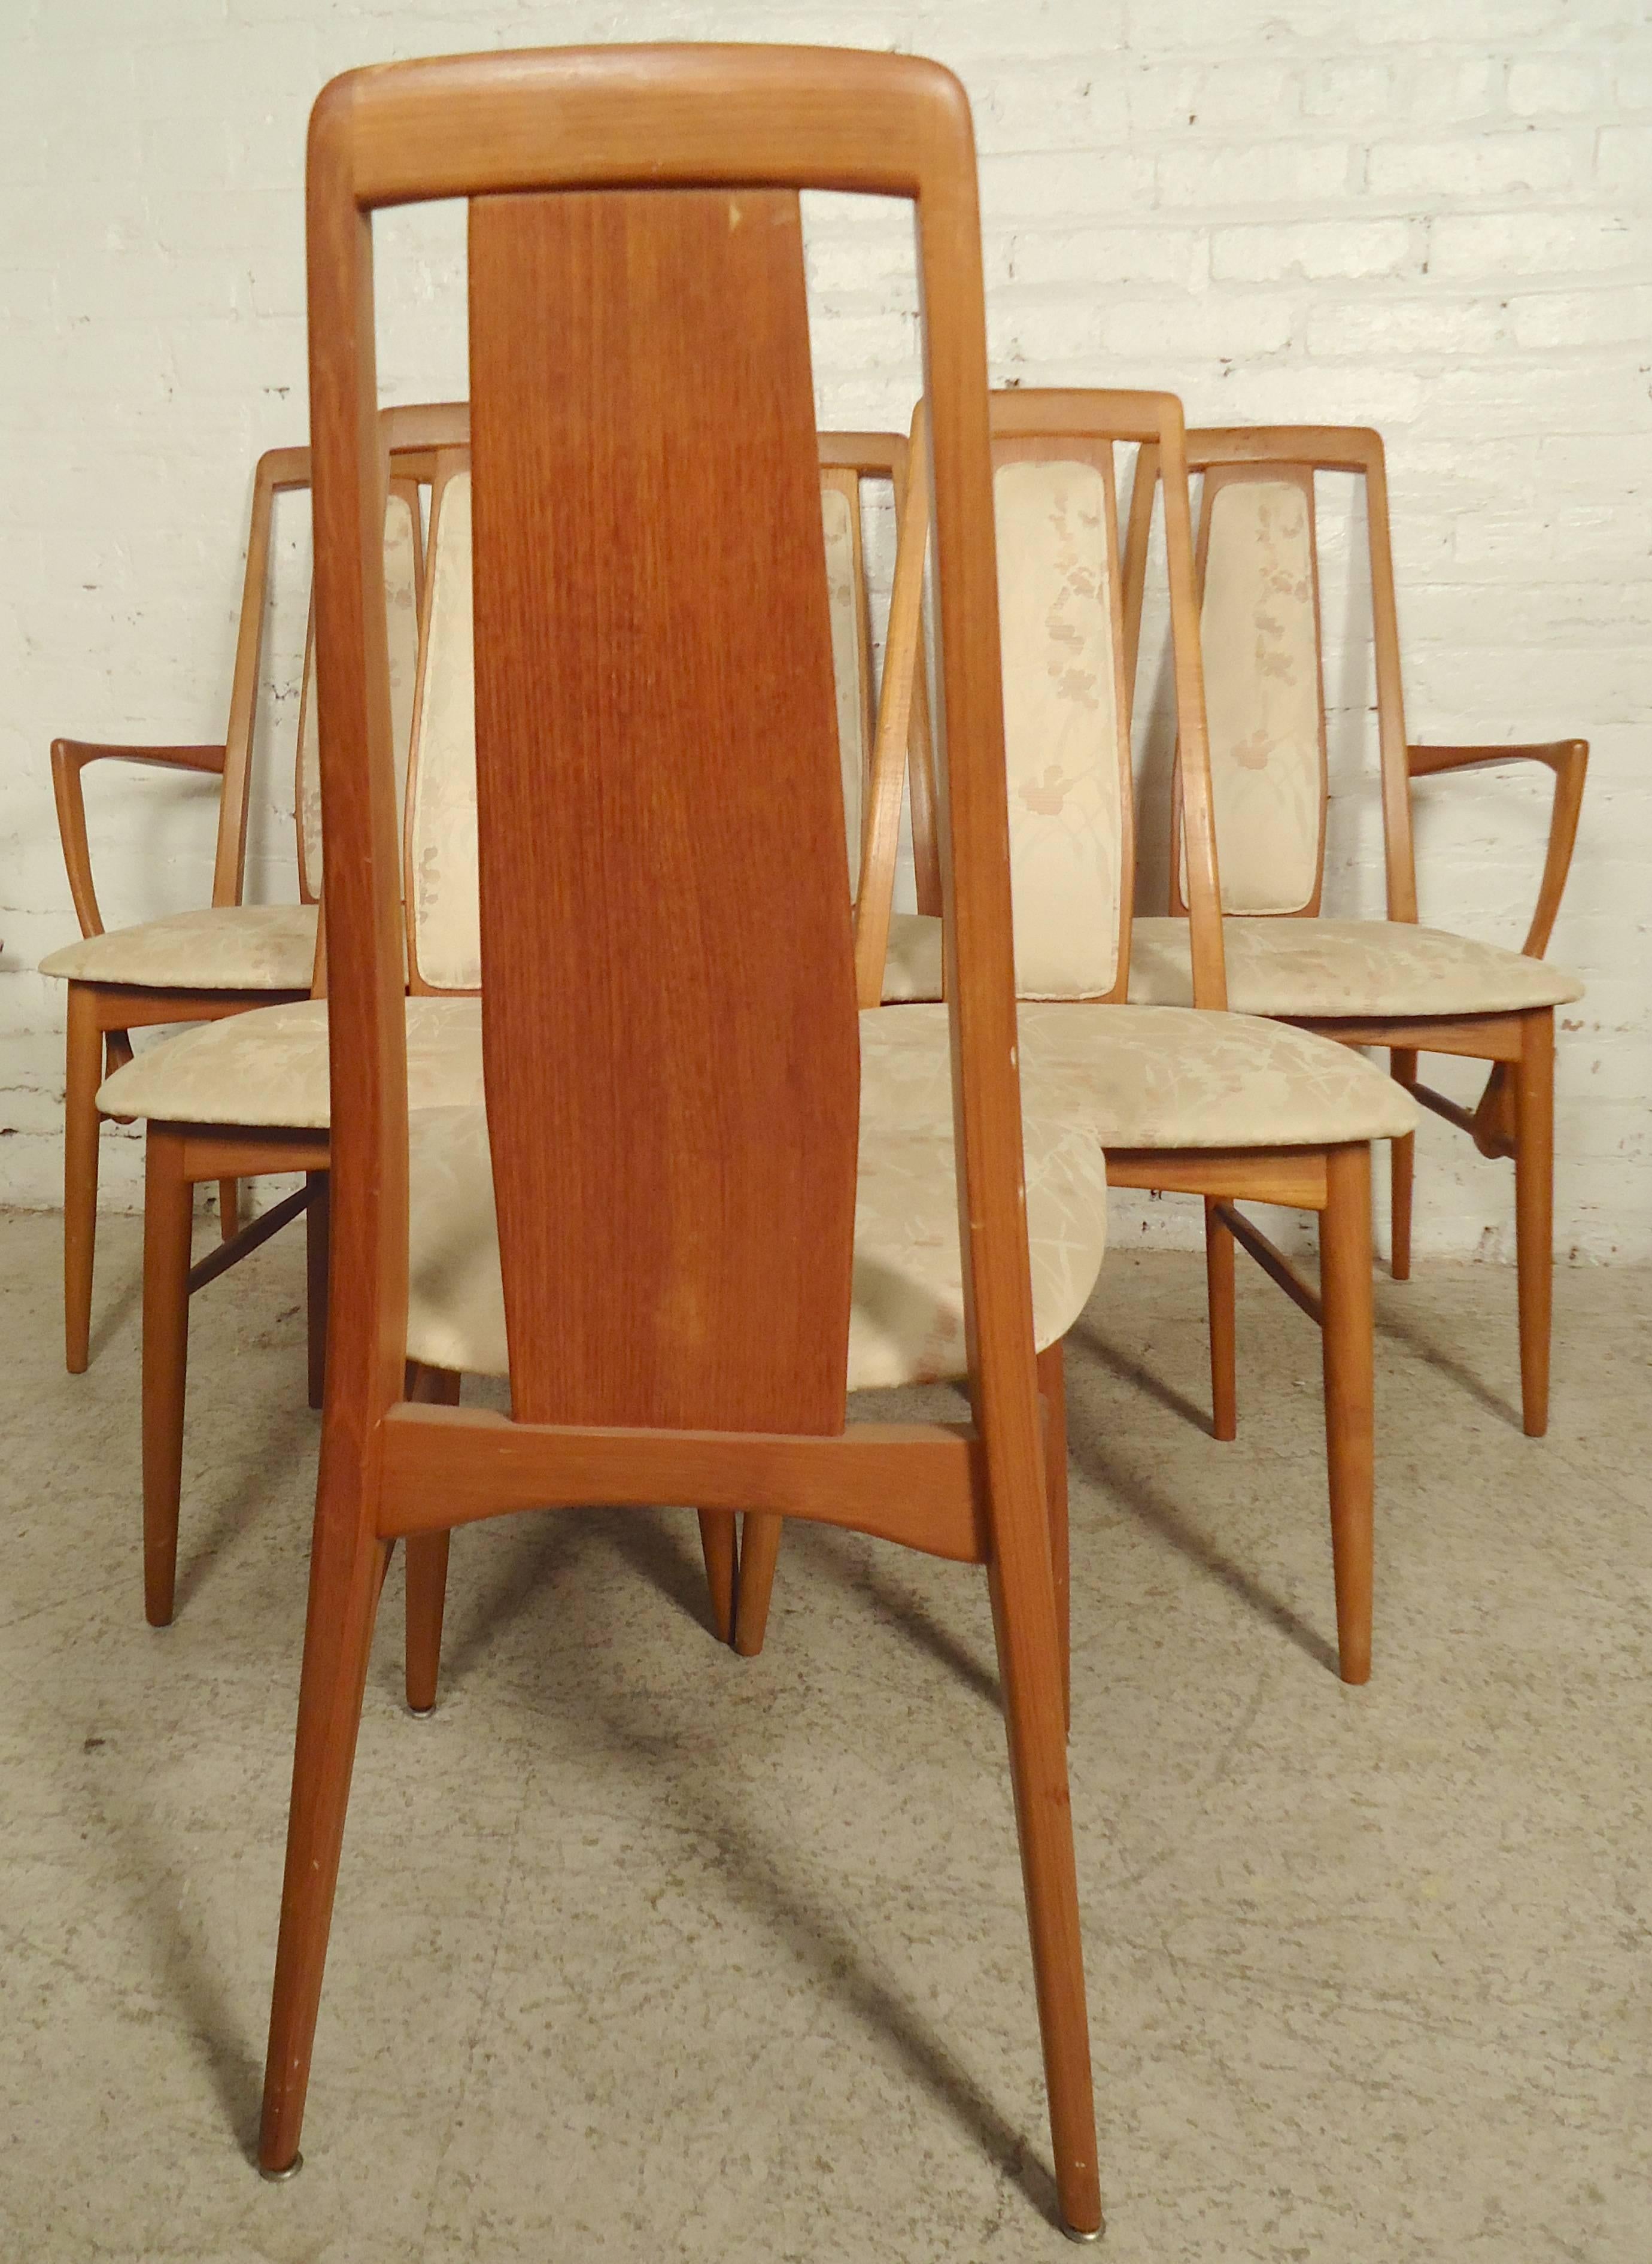 Ensemble de chaises de salle à manger modernes du milieu du siècle, conçues par Niels Kofoed pour Koefoeds Hornslet. Piétements en teck clair, pieds fuselés, hauts dossiers, deux fauteuils.

(Veuillez confirmer l'emplacement de l'article NY ou NJ